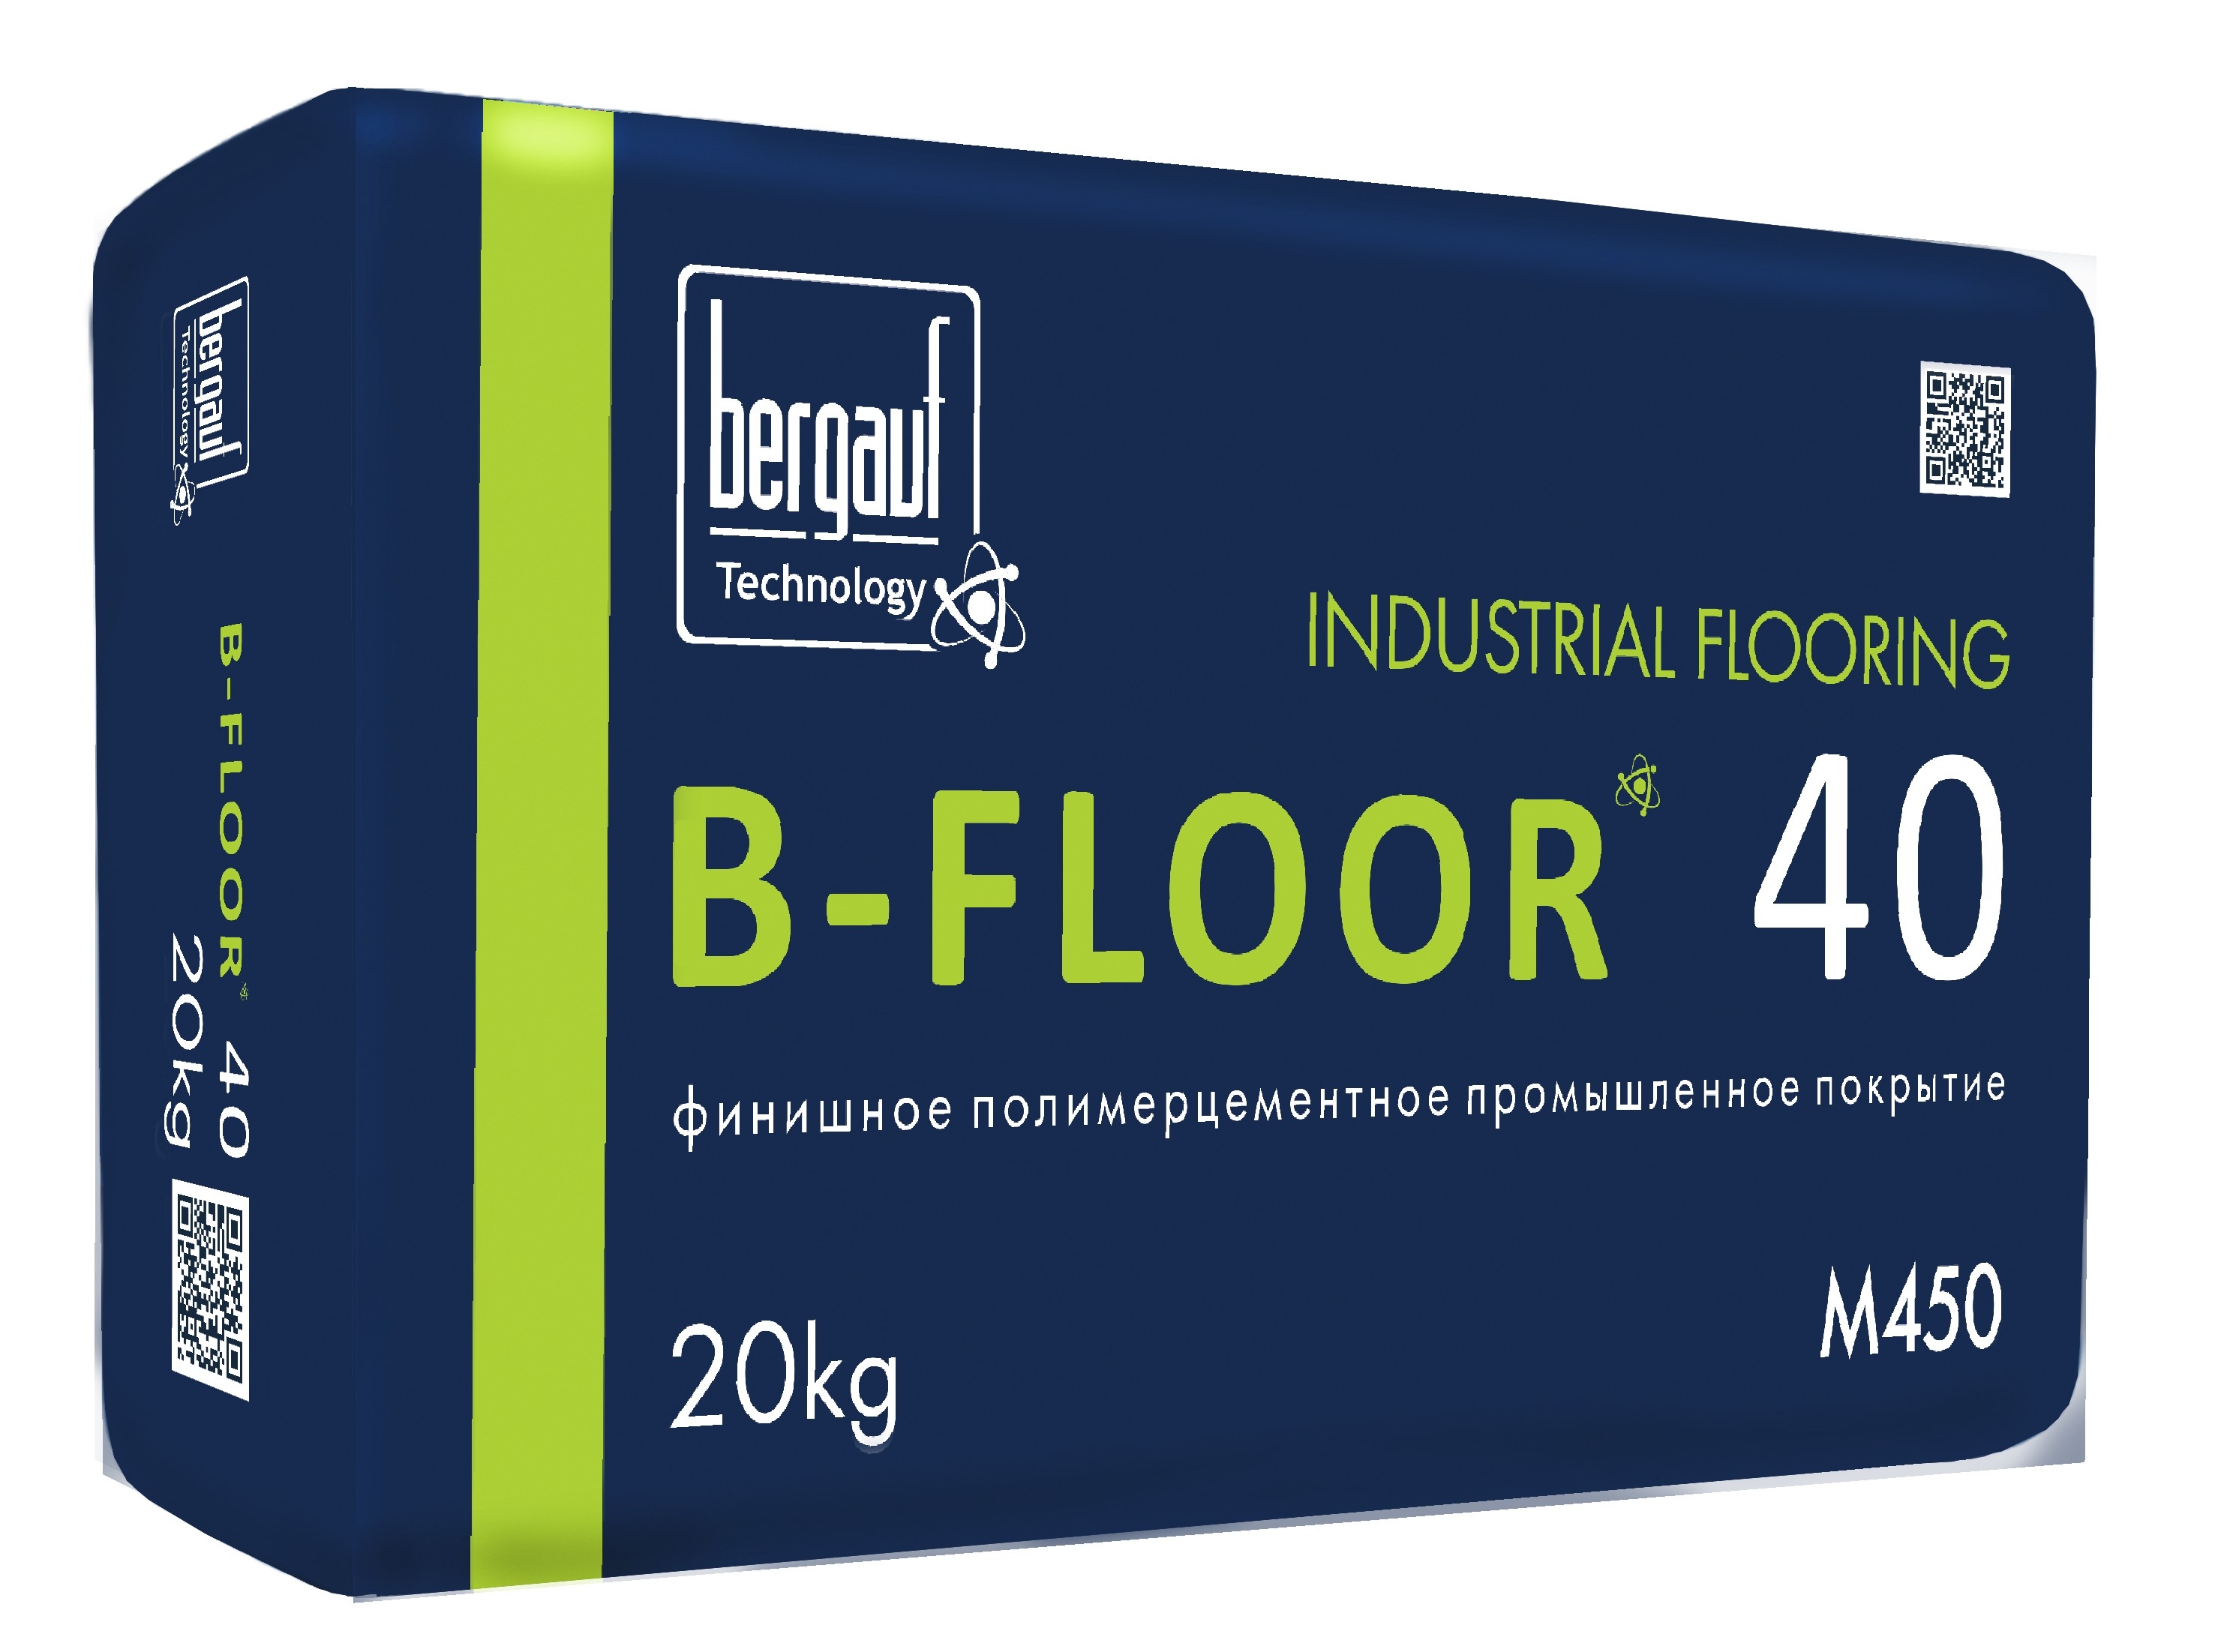 B-Floor 40